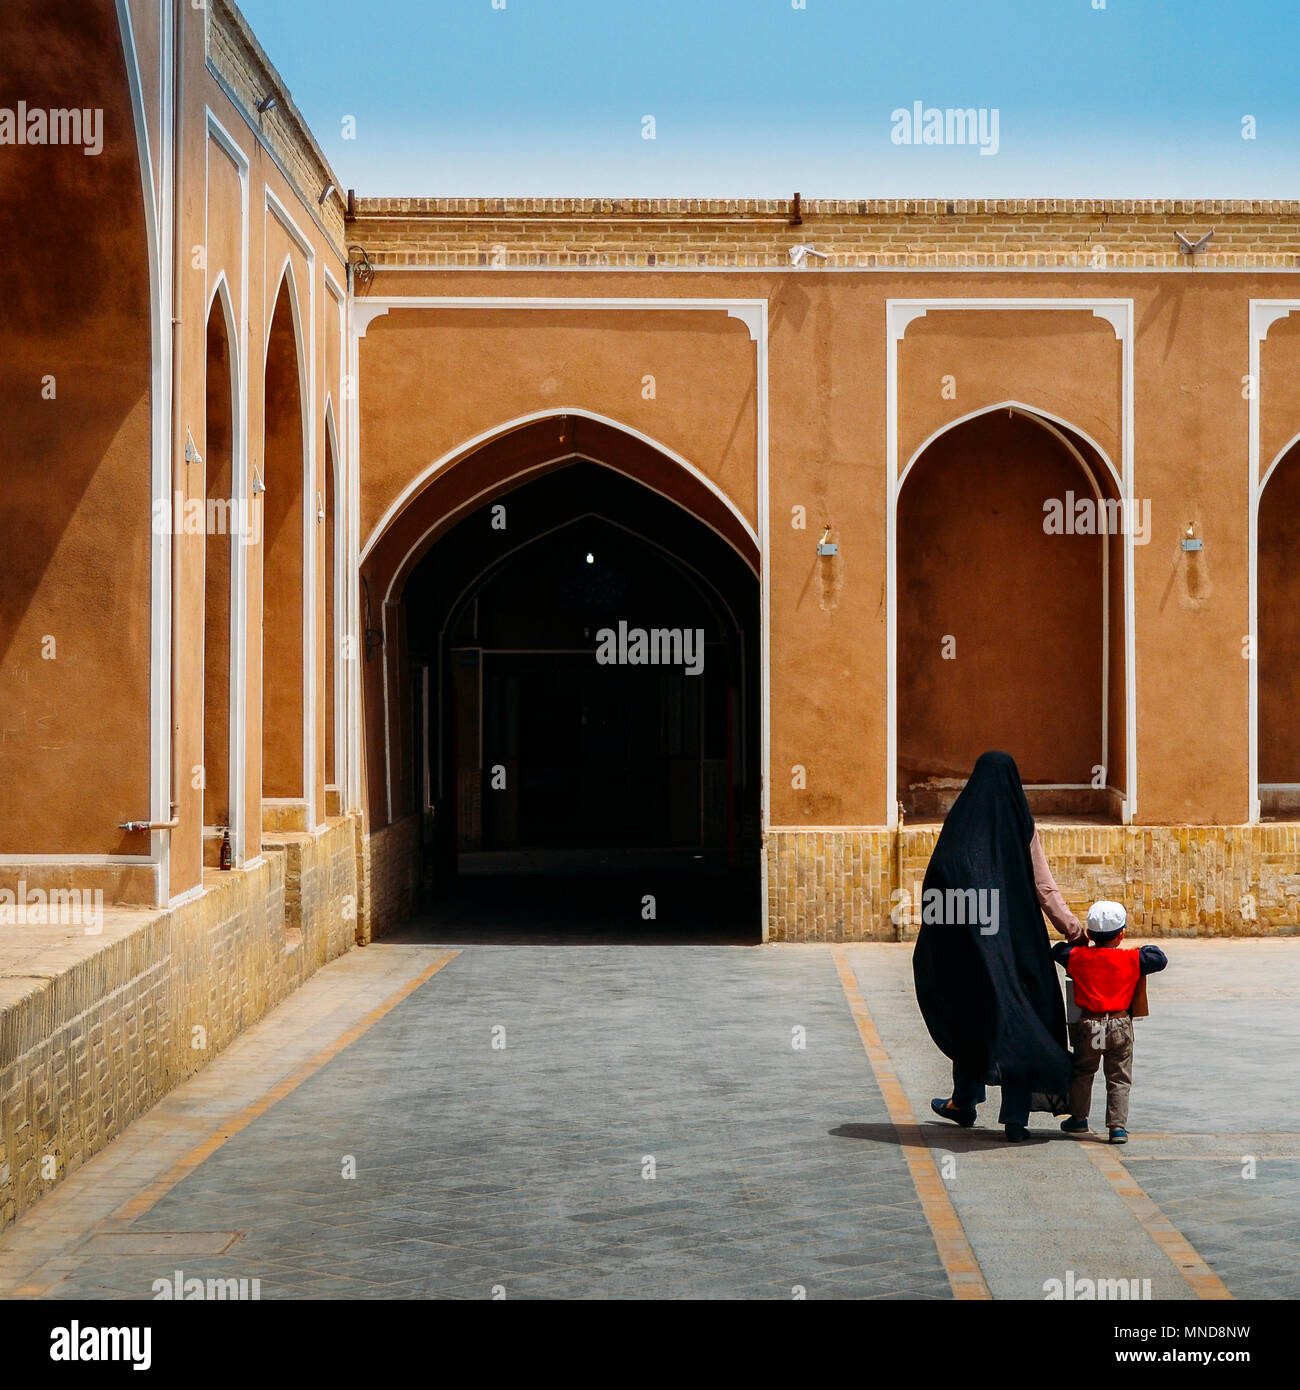 Die anonyme Frau das Tragen eines traditionellen schwarzen Kleid im Iran, bekannt als tschador, hält die Hand eines Jungen. Islamische Architektur im Hintergrund mit alten Bögen Stockfoto